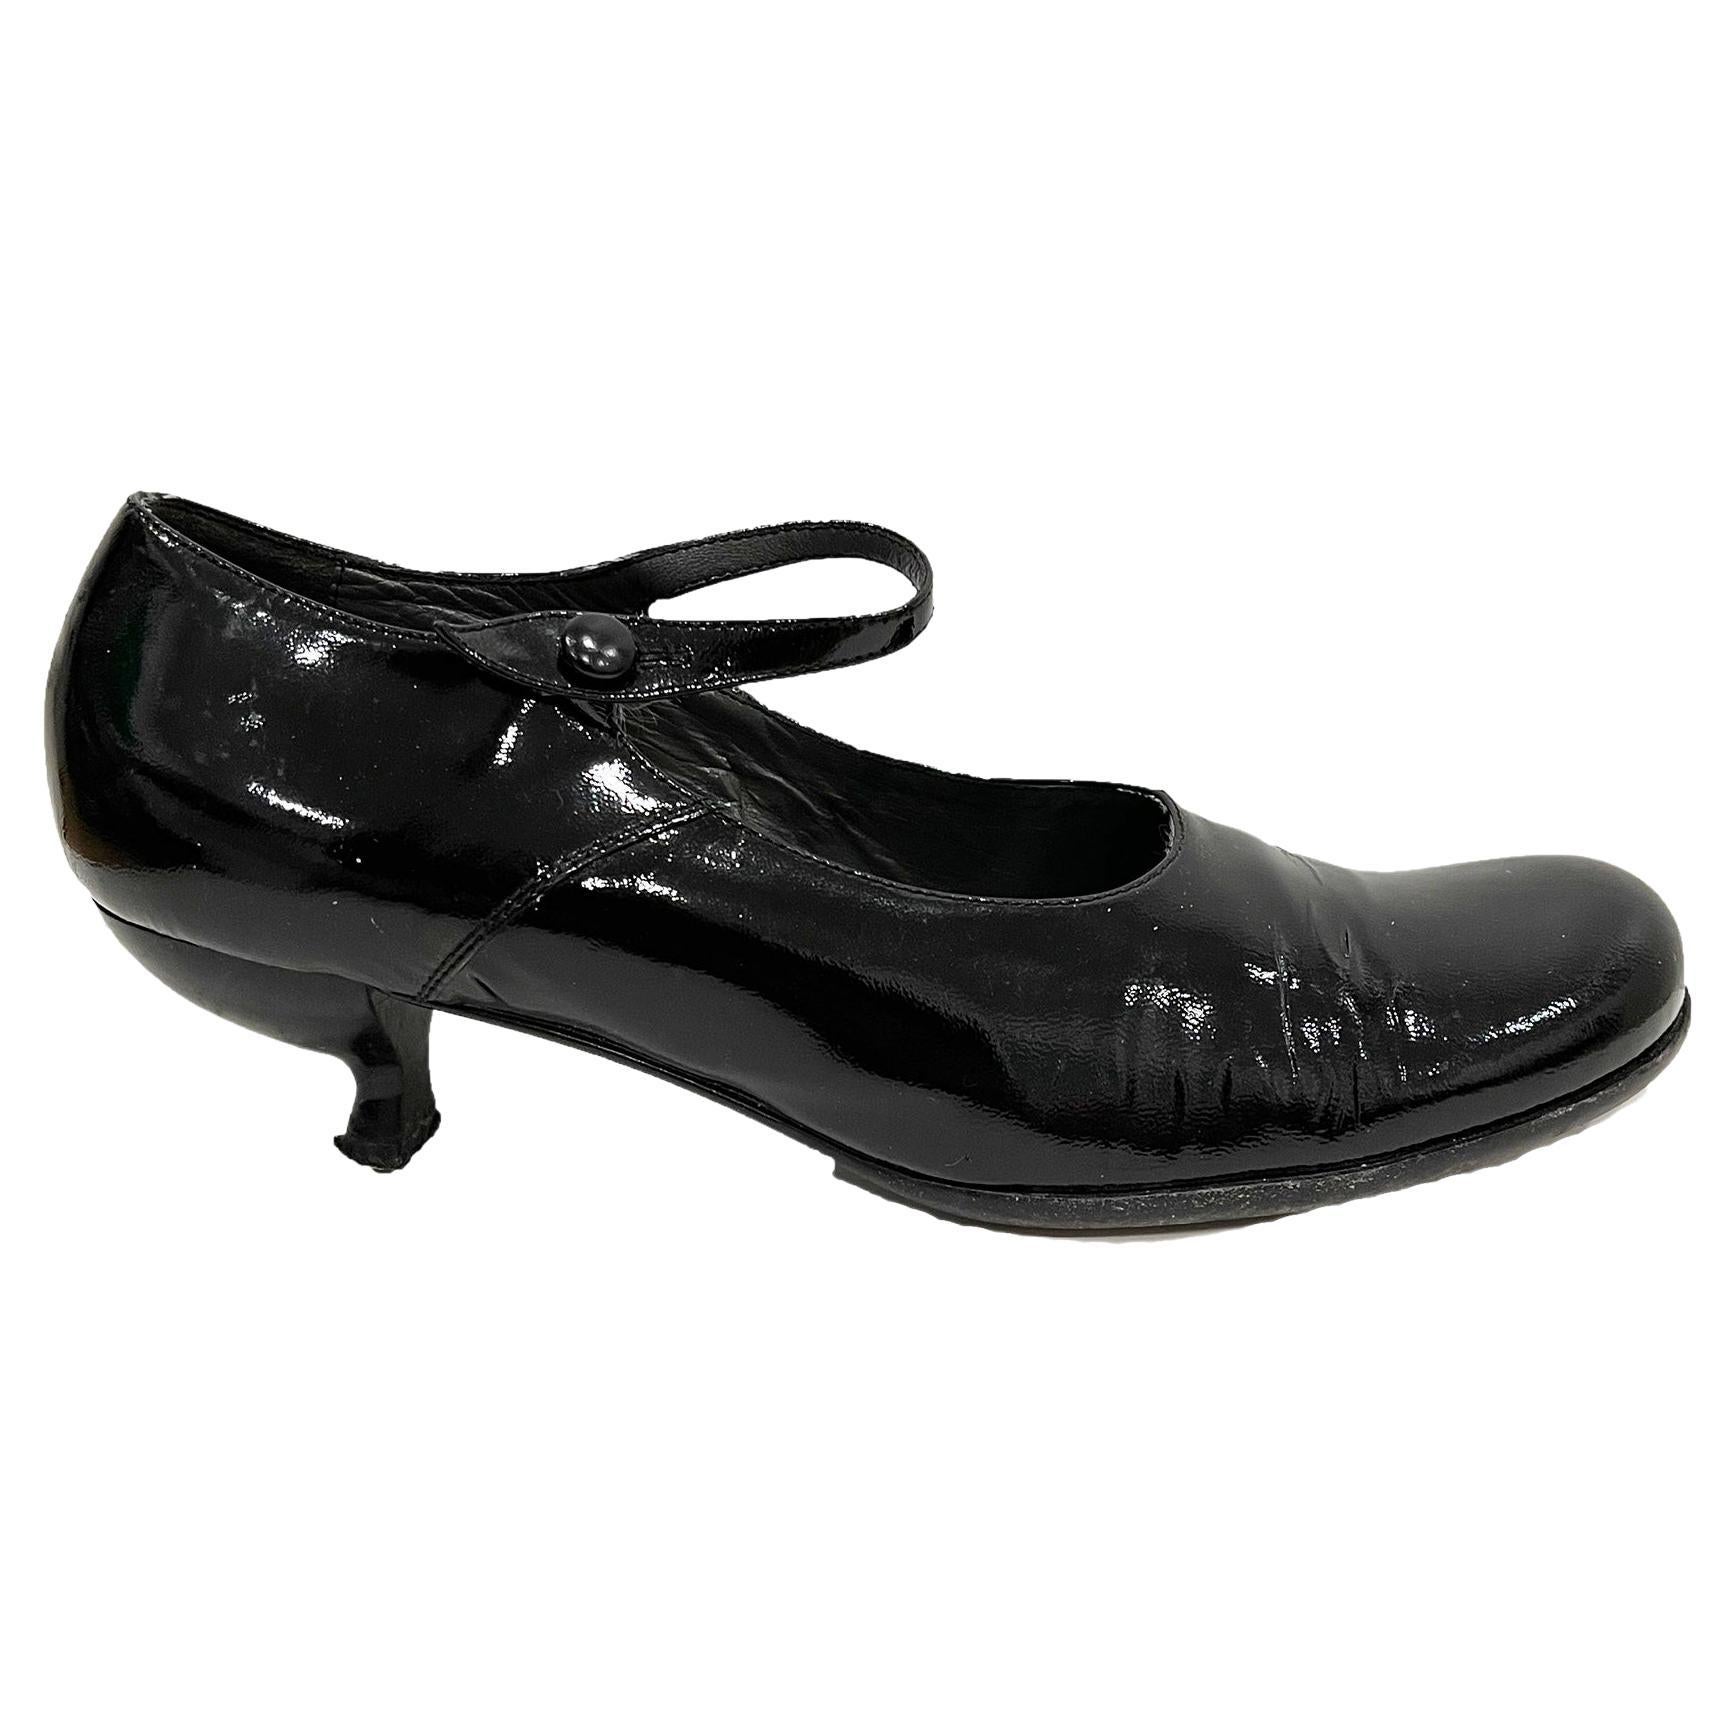 1990s Miu Miu patent leather kitten heels